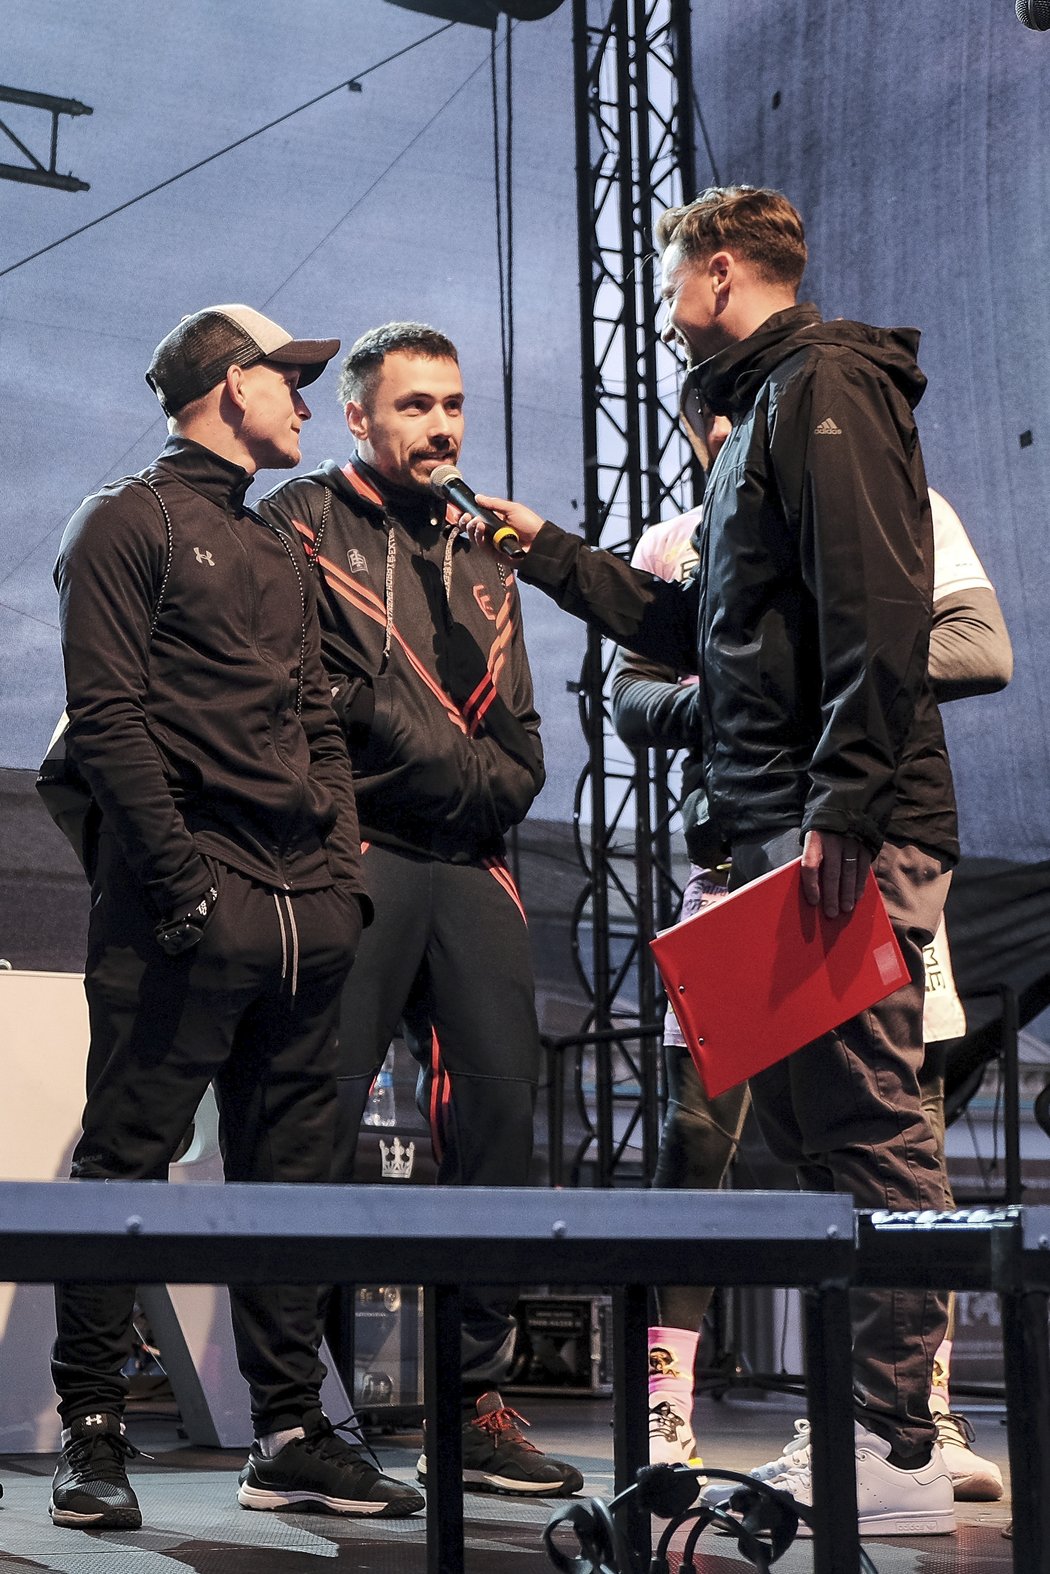 Zprava: MMA zápasníci David Dvořák a Pavel Simandl